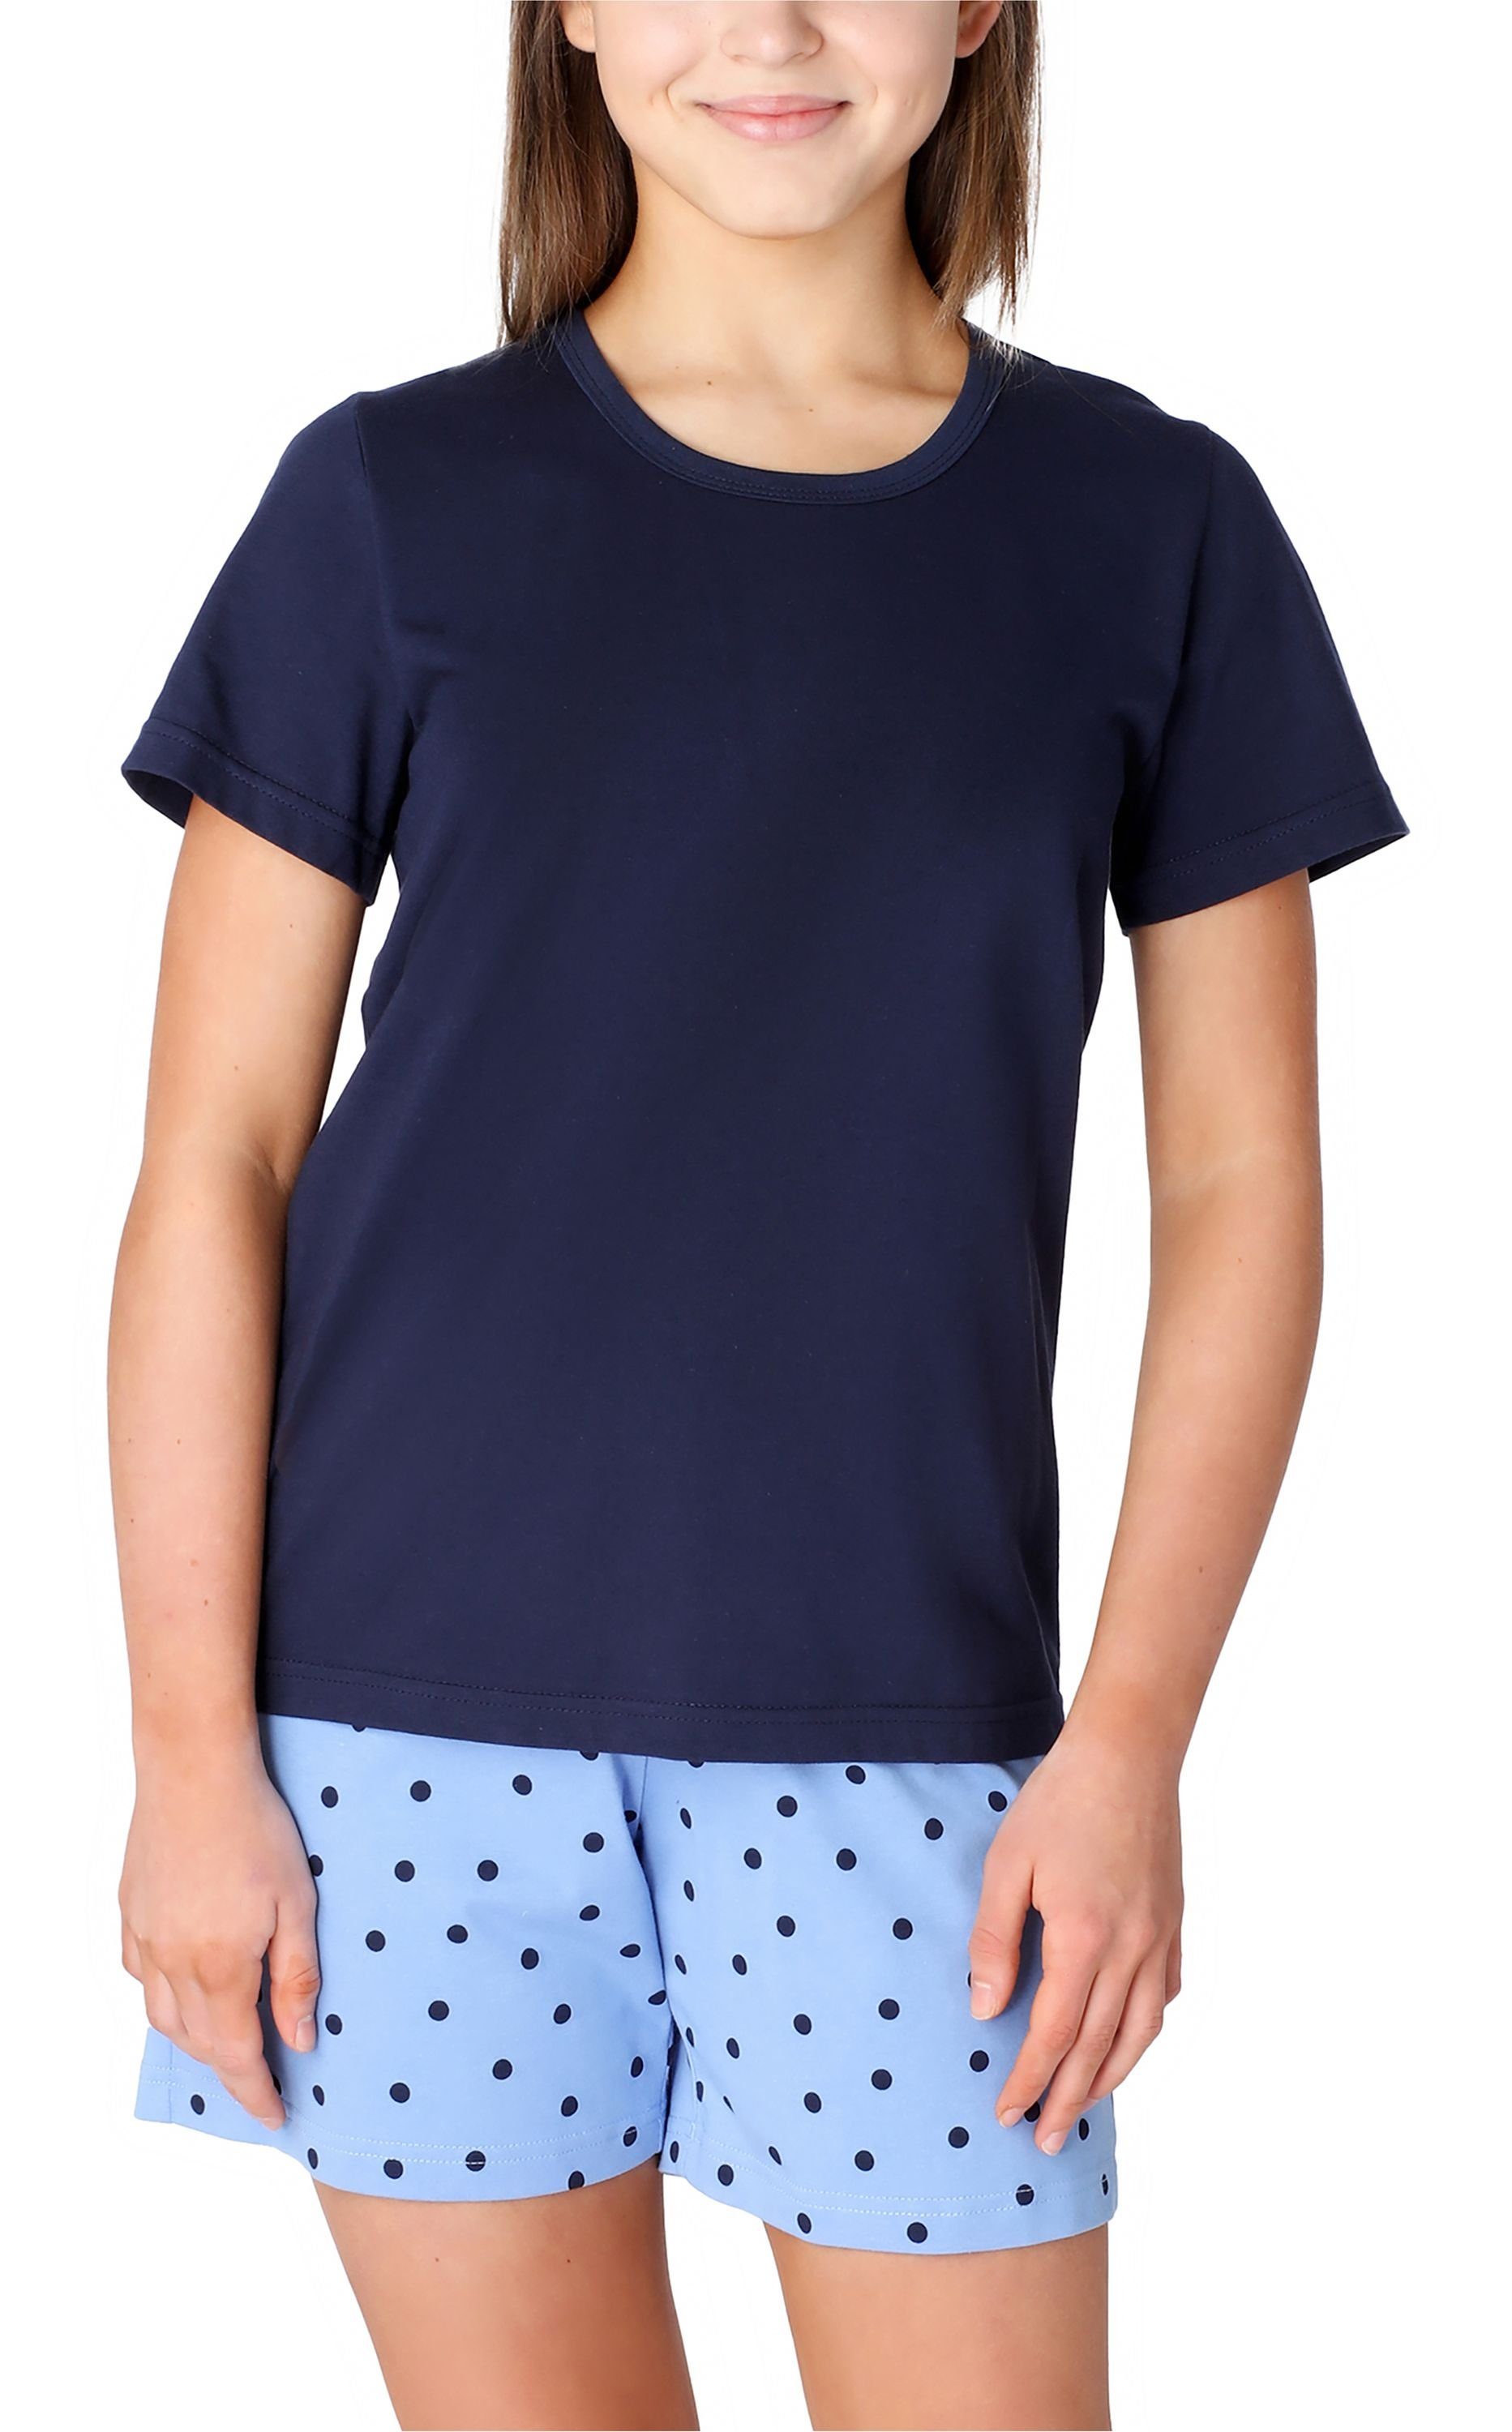 Marine/Blau/Punkte Style Mädchen MS10-265 Pyjama Set Kurz aus Baumwolle Schlafanzüge Schlafanzug Merry